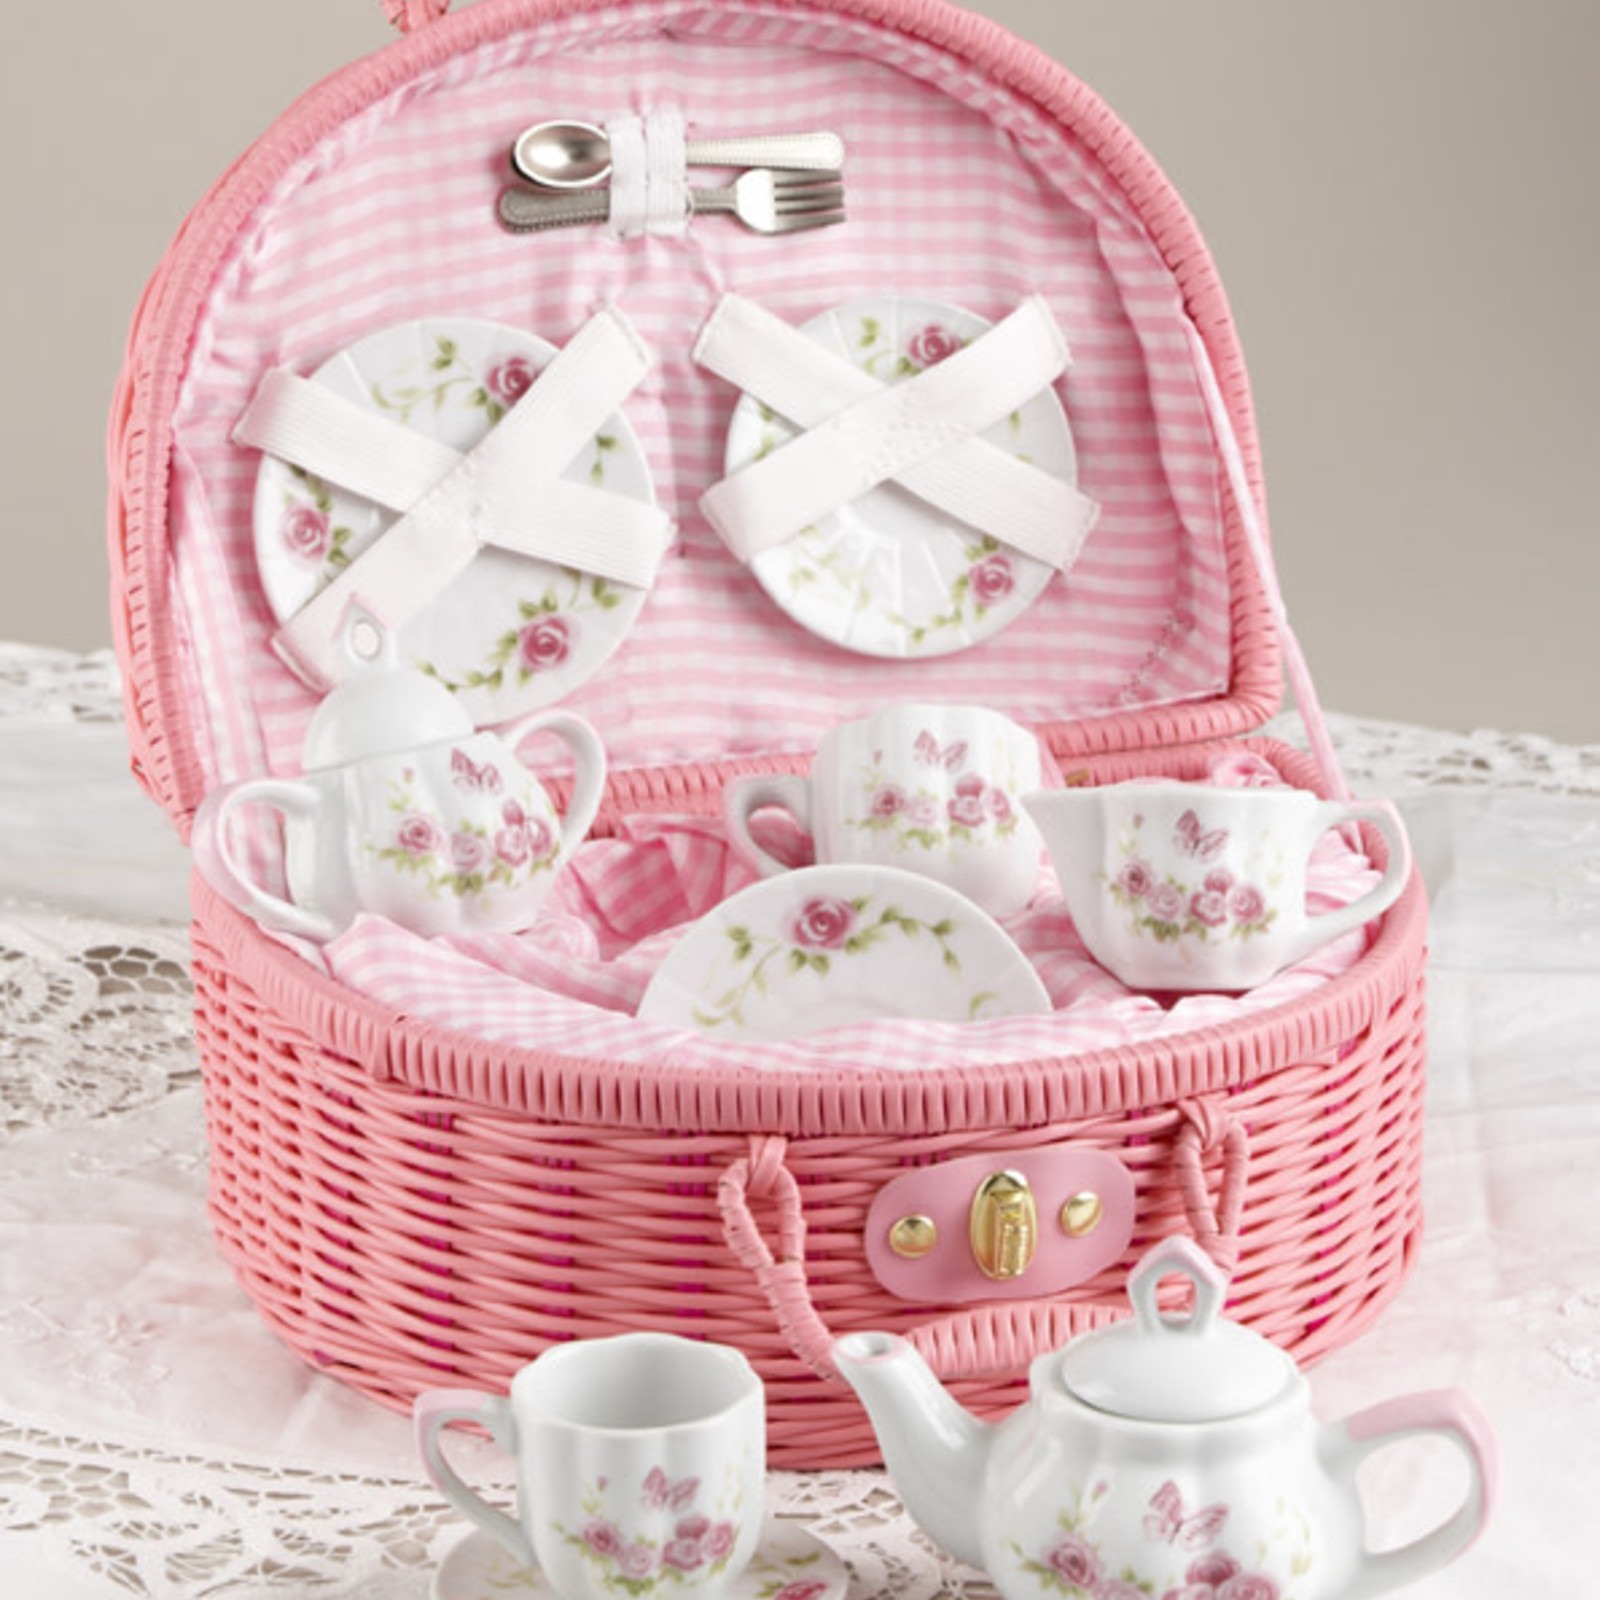 Delton Products Porcelain Tea Set in Basket, Pink Blush  8090-6 loading=